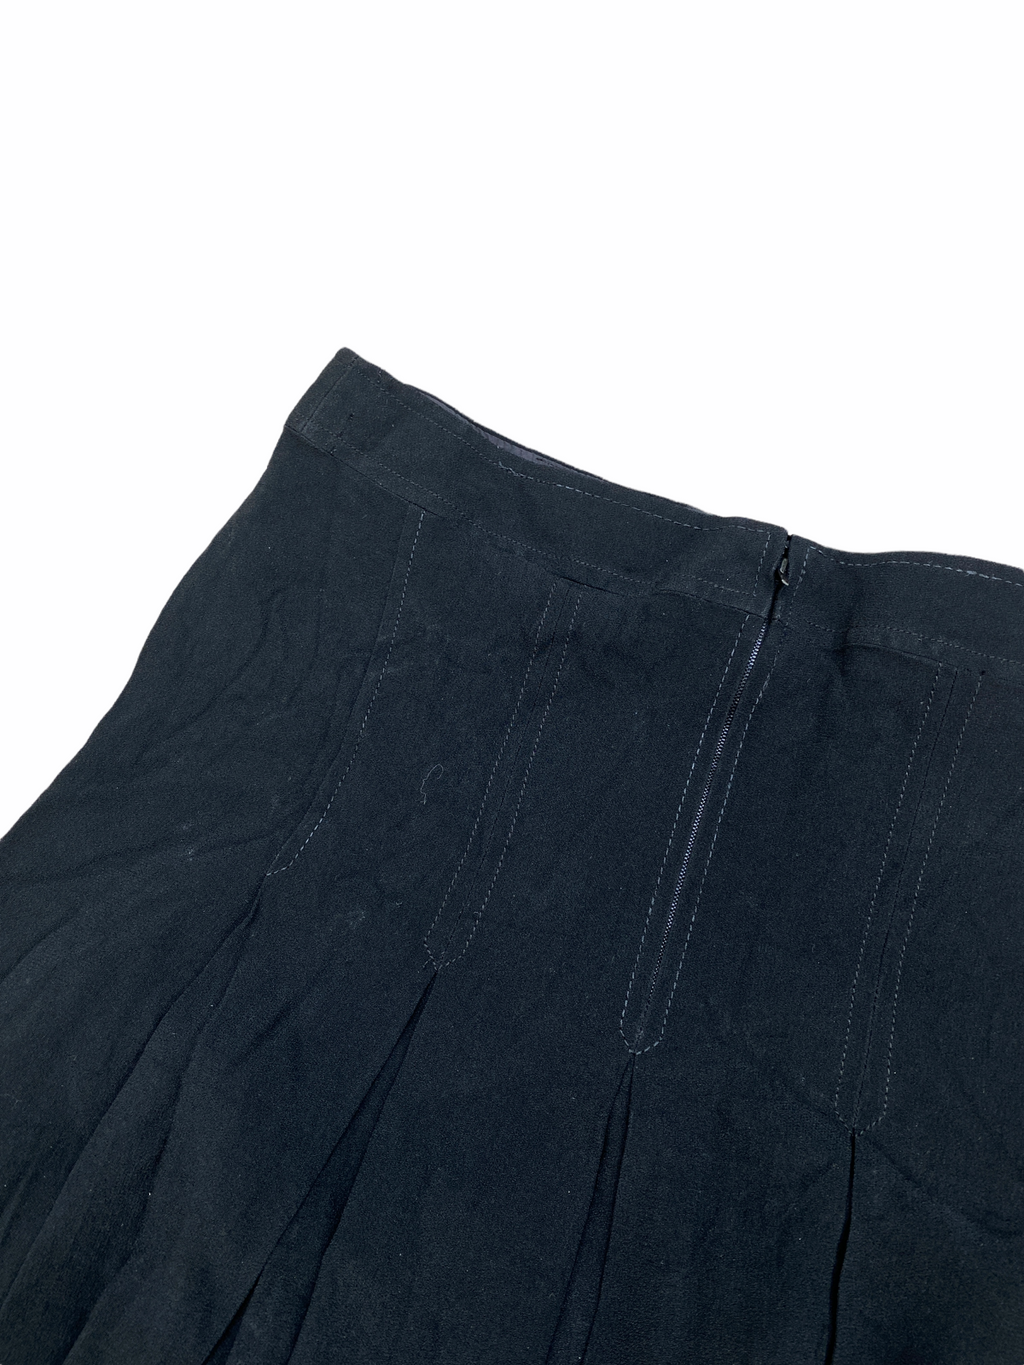 Vintage black skirt